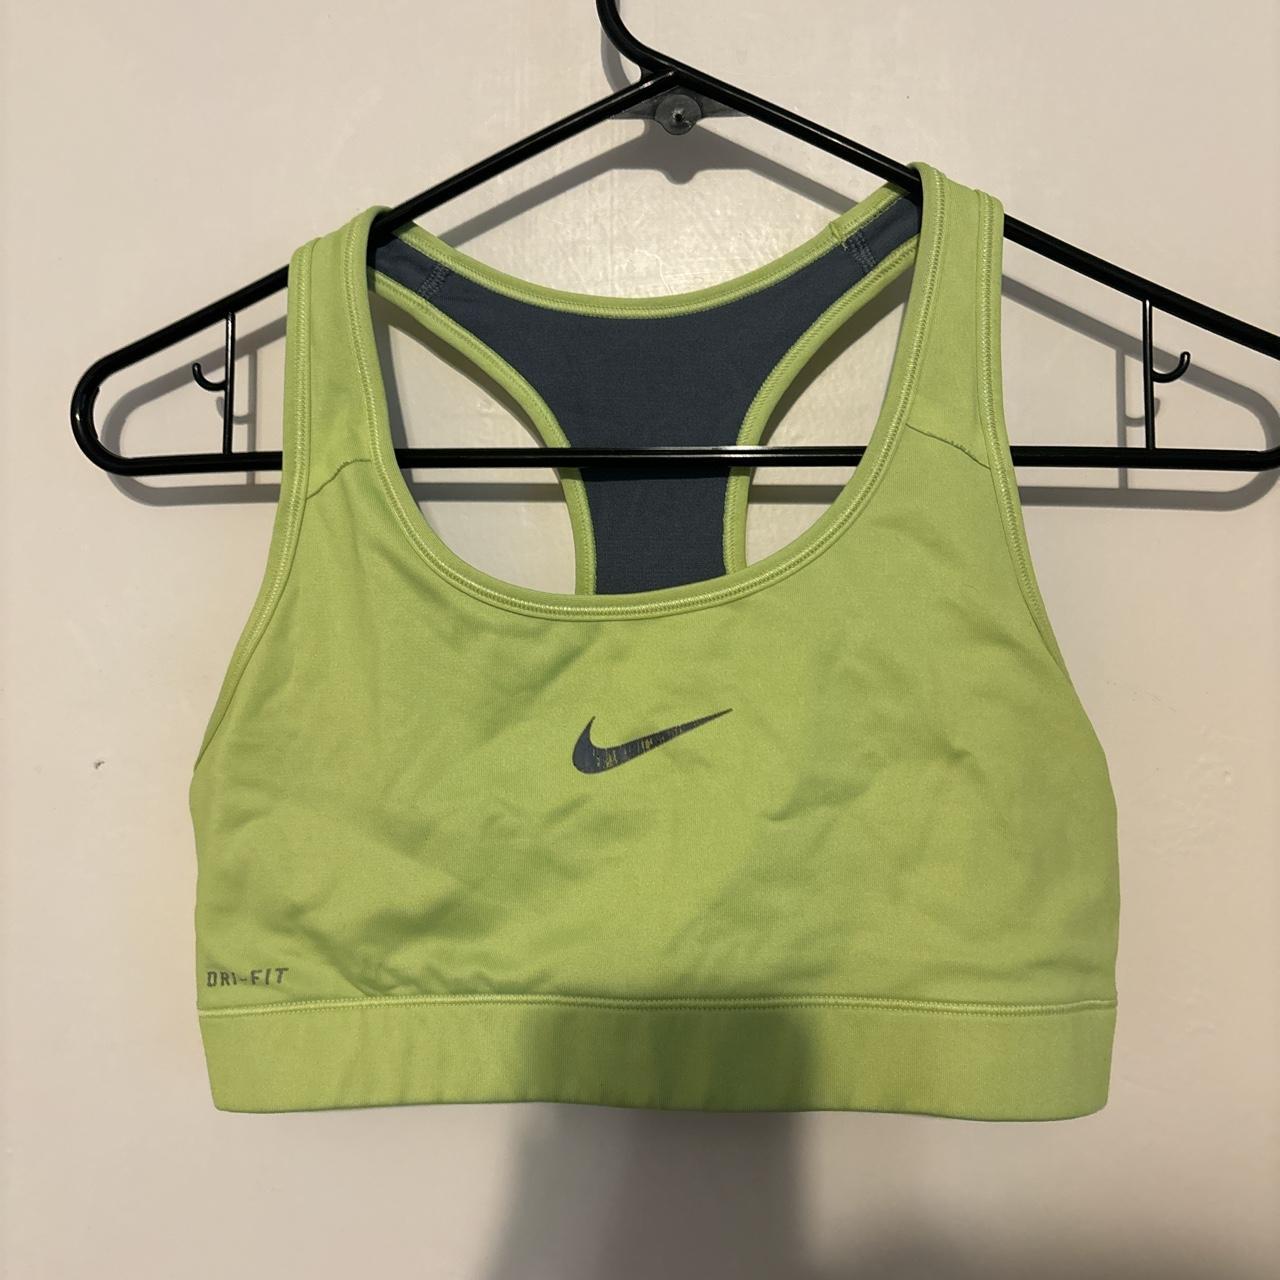 Lime green dri fit Nike sports bra - Depop